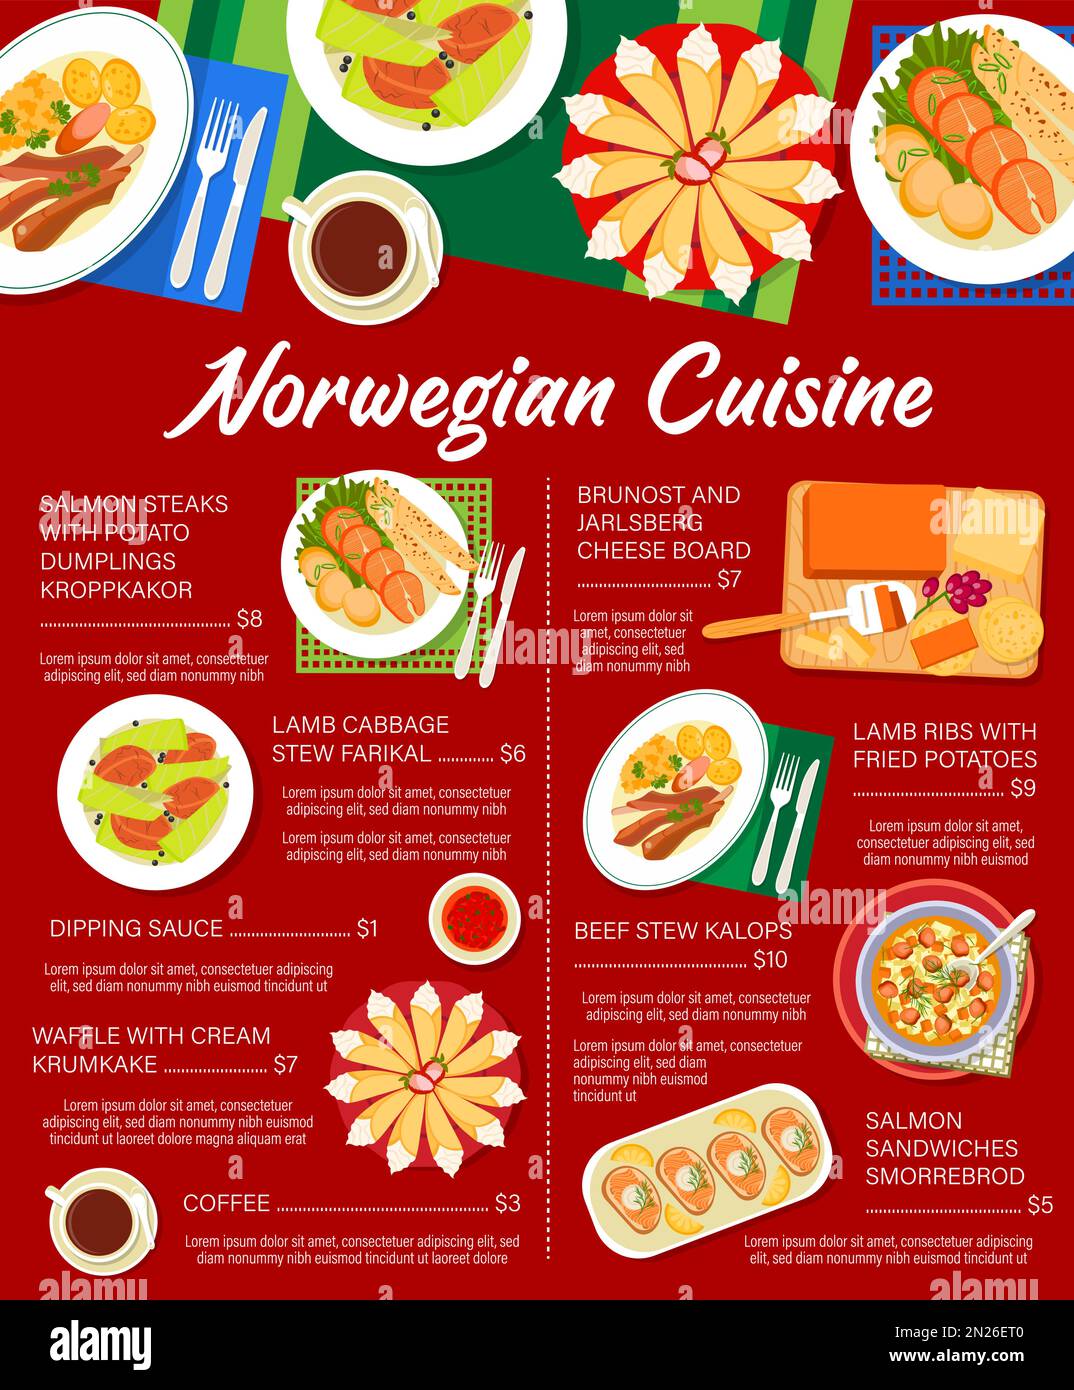 https://c8.alamy.com/compes/2n26et0/menu-de-cocina-noruega-con-platos-de-comida-o-comidas-de-almuerzo-y-cena-vector-menu-de-restaurante-de-cocina-noruega-para-sandwiches-de-salmon-smorrebrod-estofado-de-repollo-de-cordero-farikal-y-brunost-y-queso-jarlsberg-2n26et0.jpg